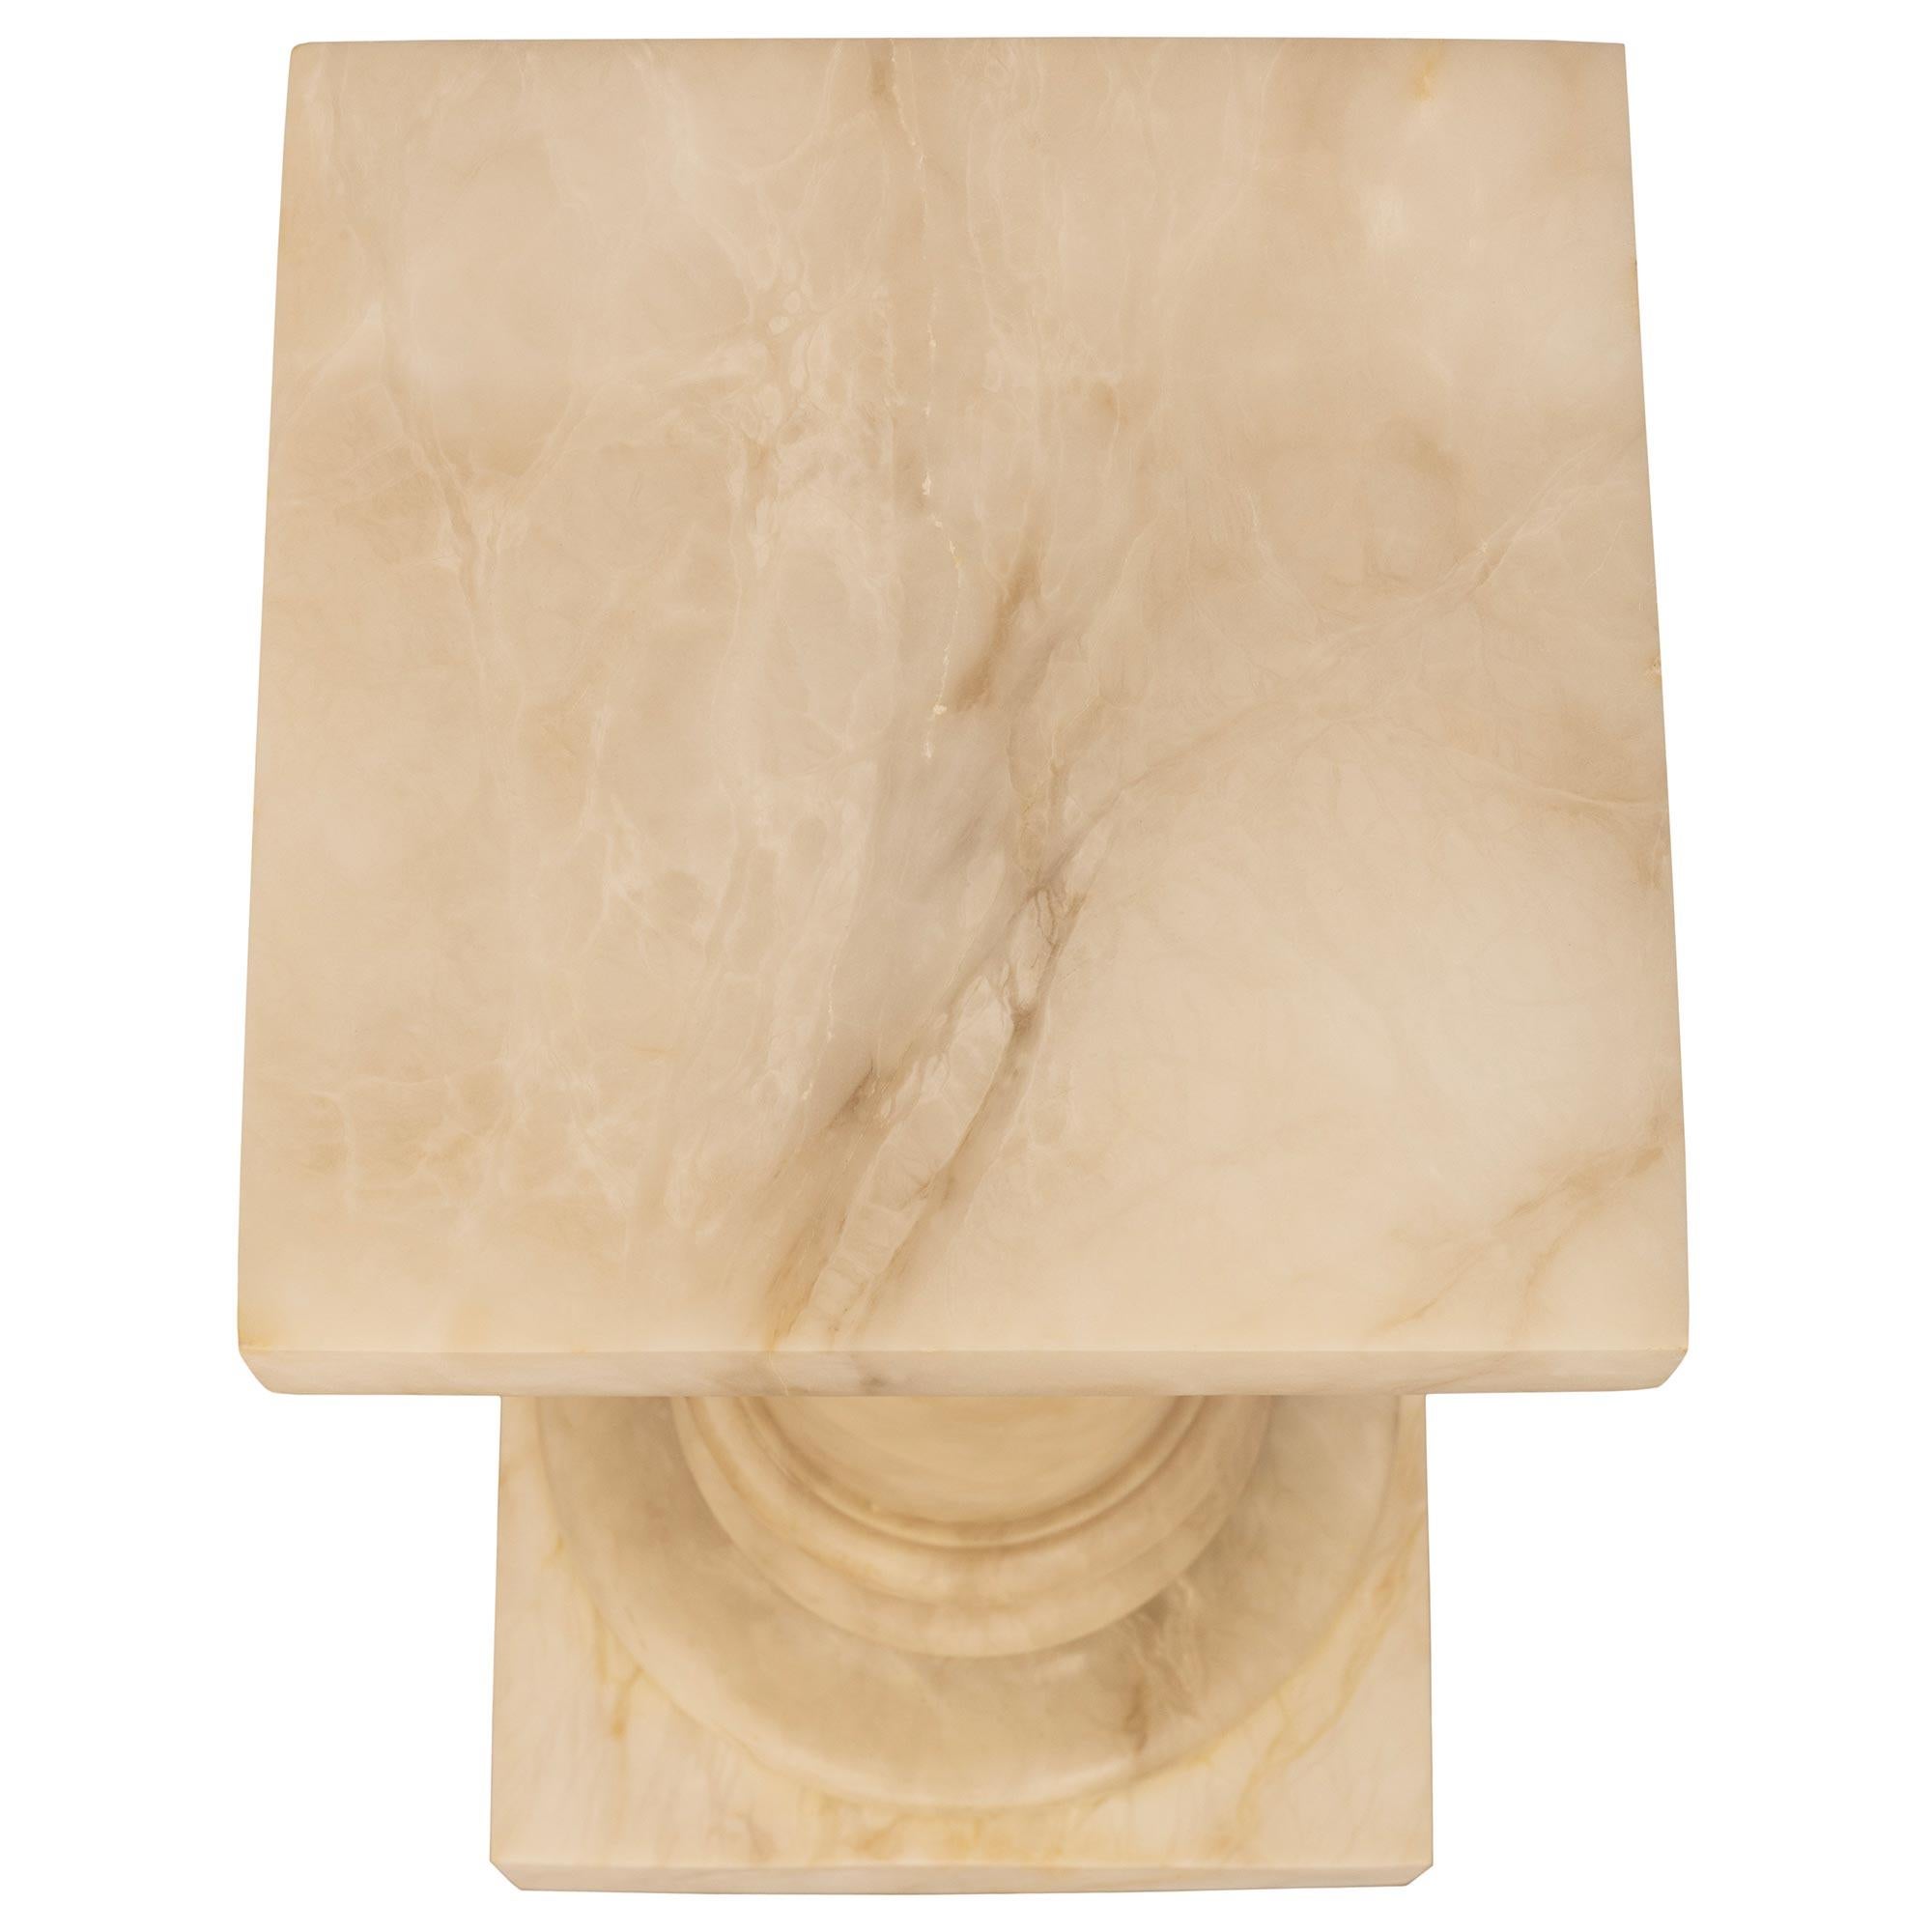 Ein schöner italienischer Alabaster-Sockel aus dem 19. Jahrhundert in Cremefarbe. Der Sockel wird von einem eindrucksvollen quadratischen Blocksockel unter einem gesprenkelten Rundsockel getragen. Die kreisförmige Säule befindet sich unter einem